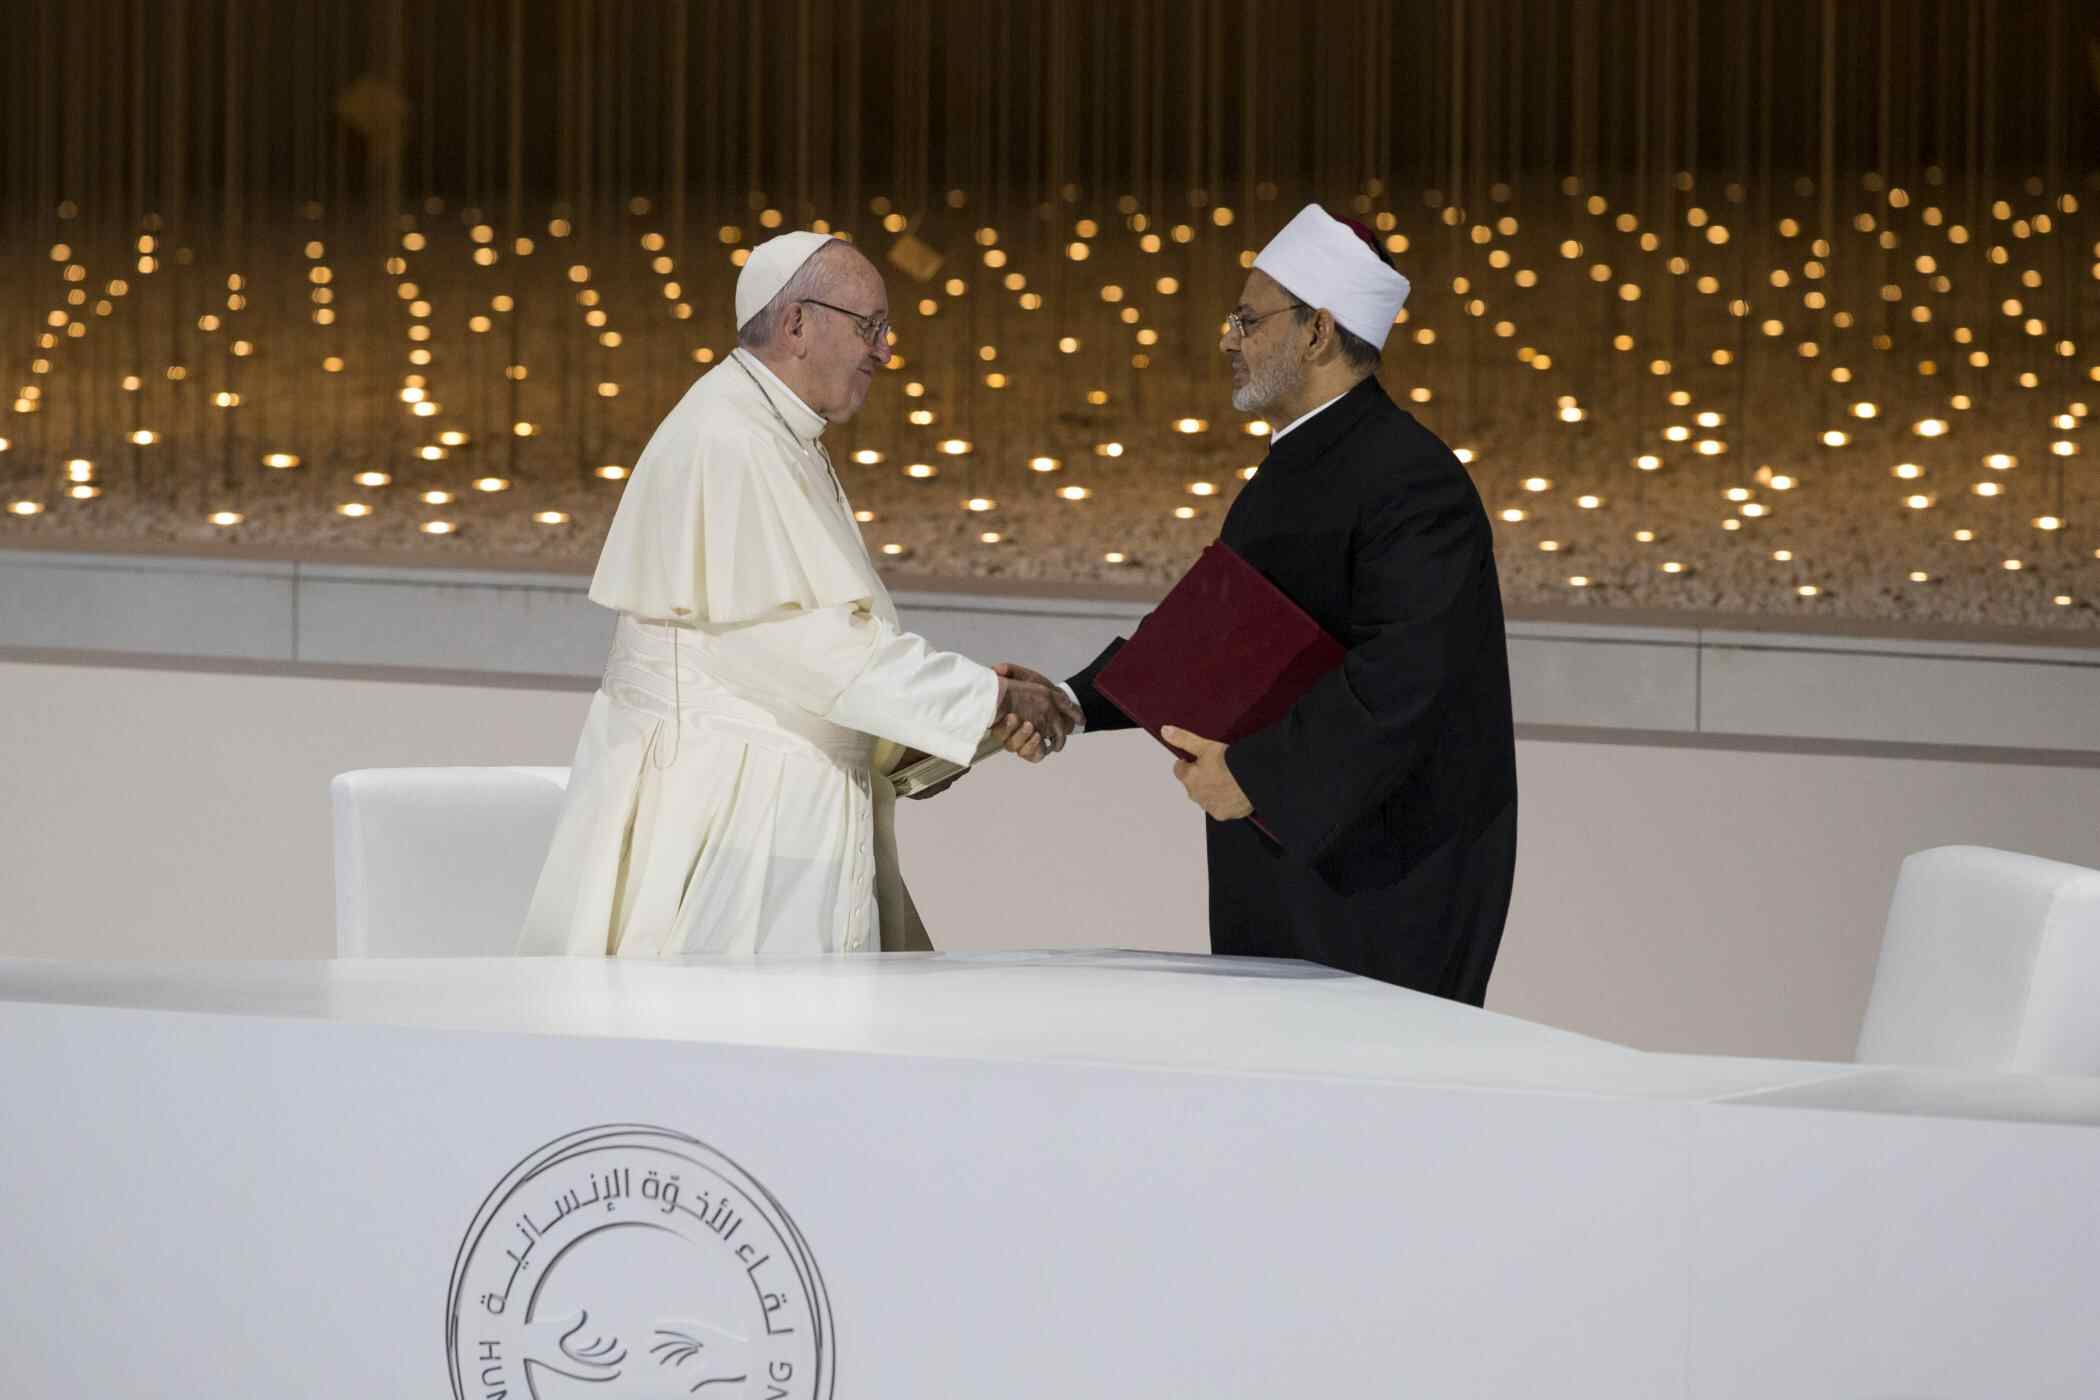 Le pape François et le grand imam d'Al Azhar signent une déclaration historique à Abu Dhabi pour promouvoir la paix et le vivre ensemble